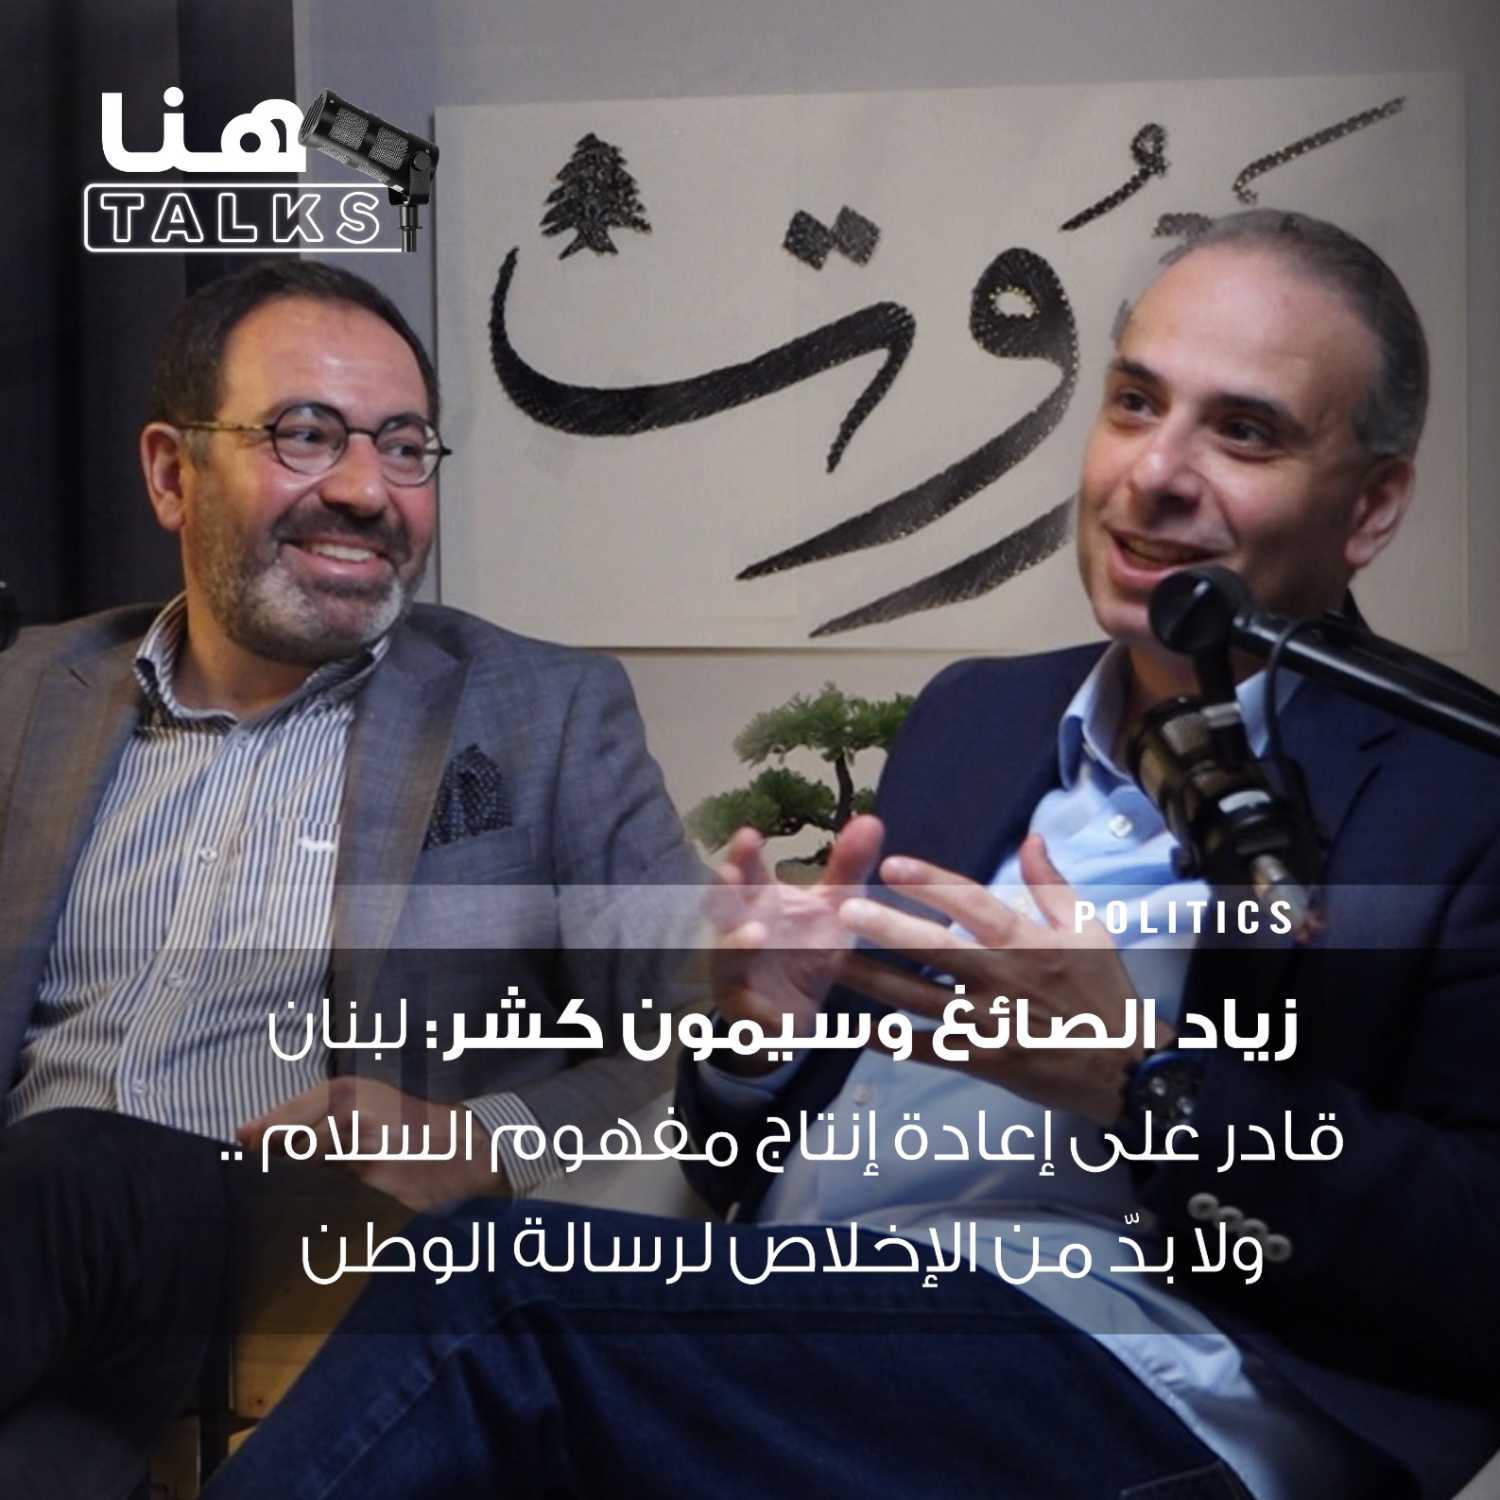 زياد الصائغ وسيمون كشر لـ"هنا Talks": لبنان قادر على إعادة إنتاج مفهوم السلام.. ولا بدّ من الإخلاص